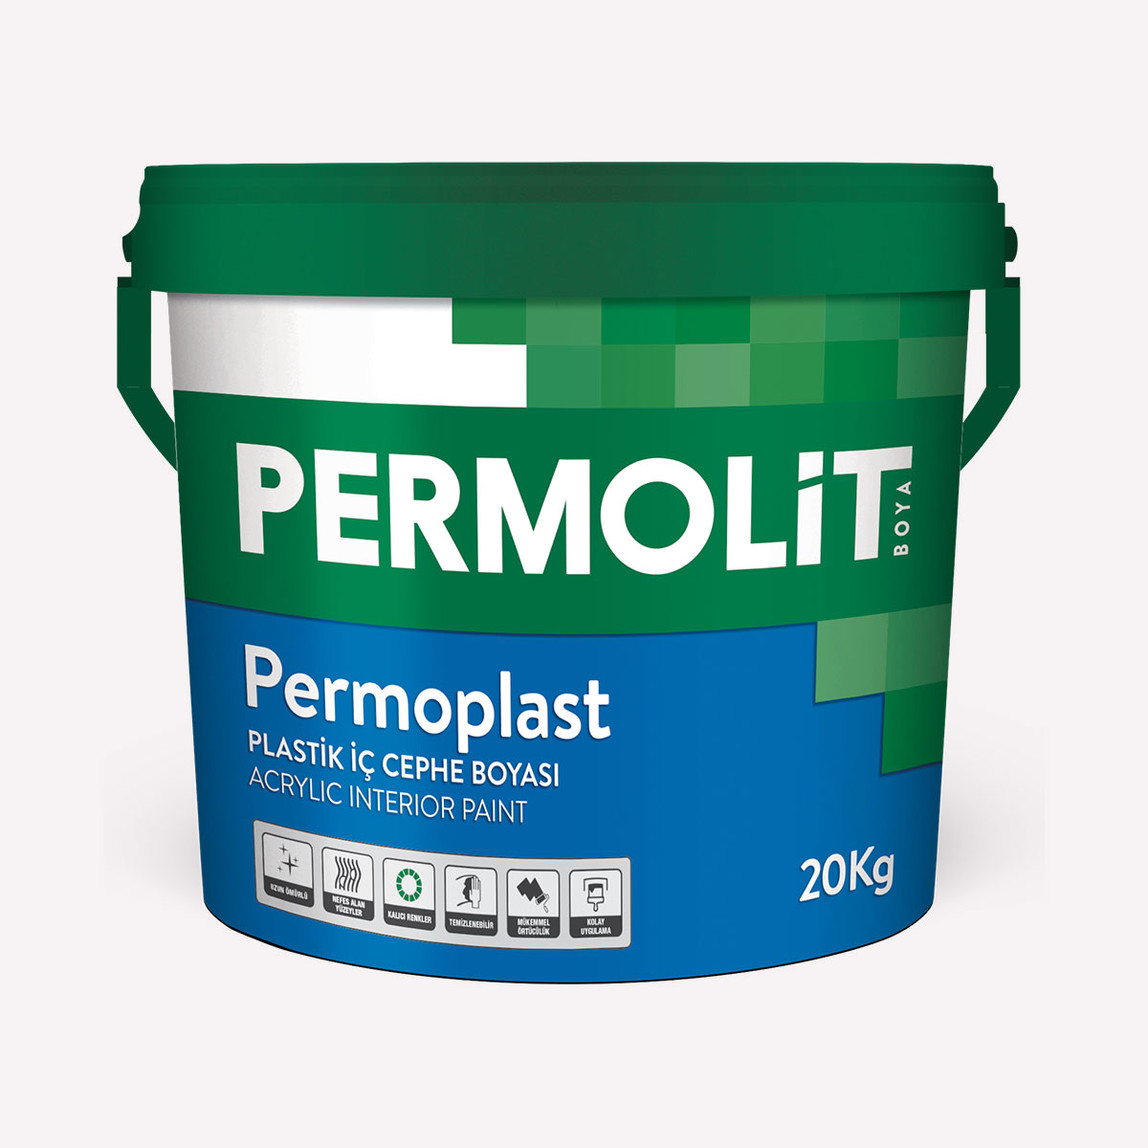    Permolit 20Kg Permoplast Plastik  Beyaz İç Cephe Boyası 